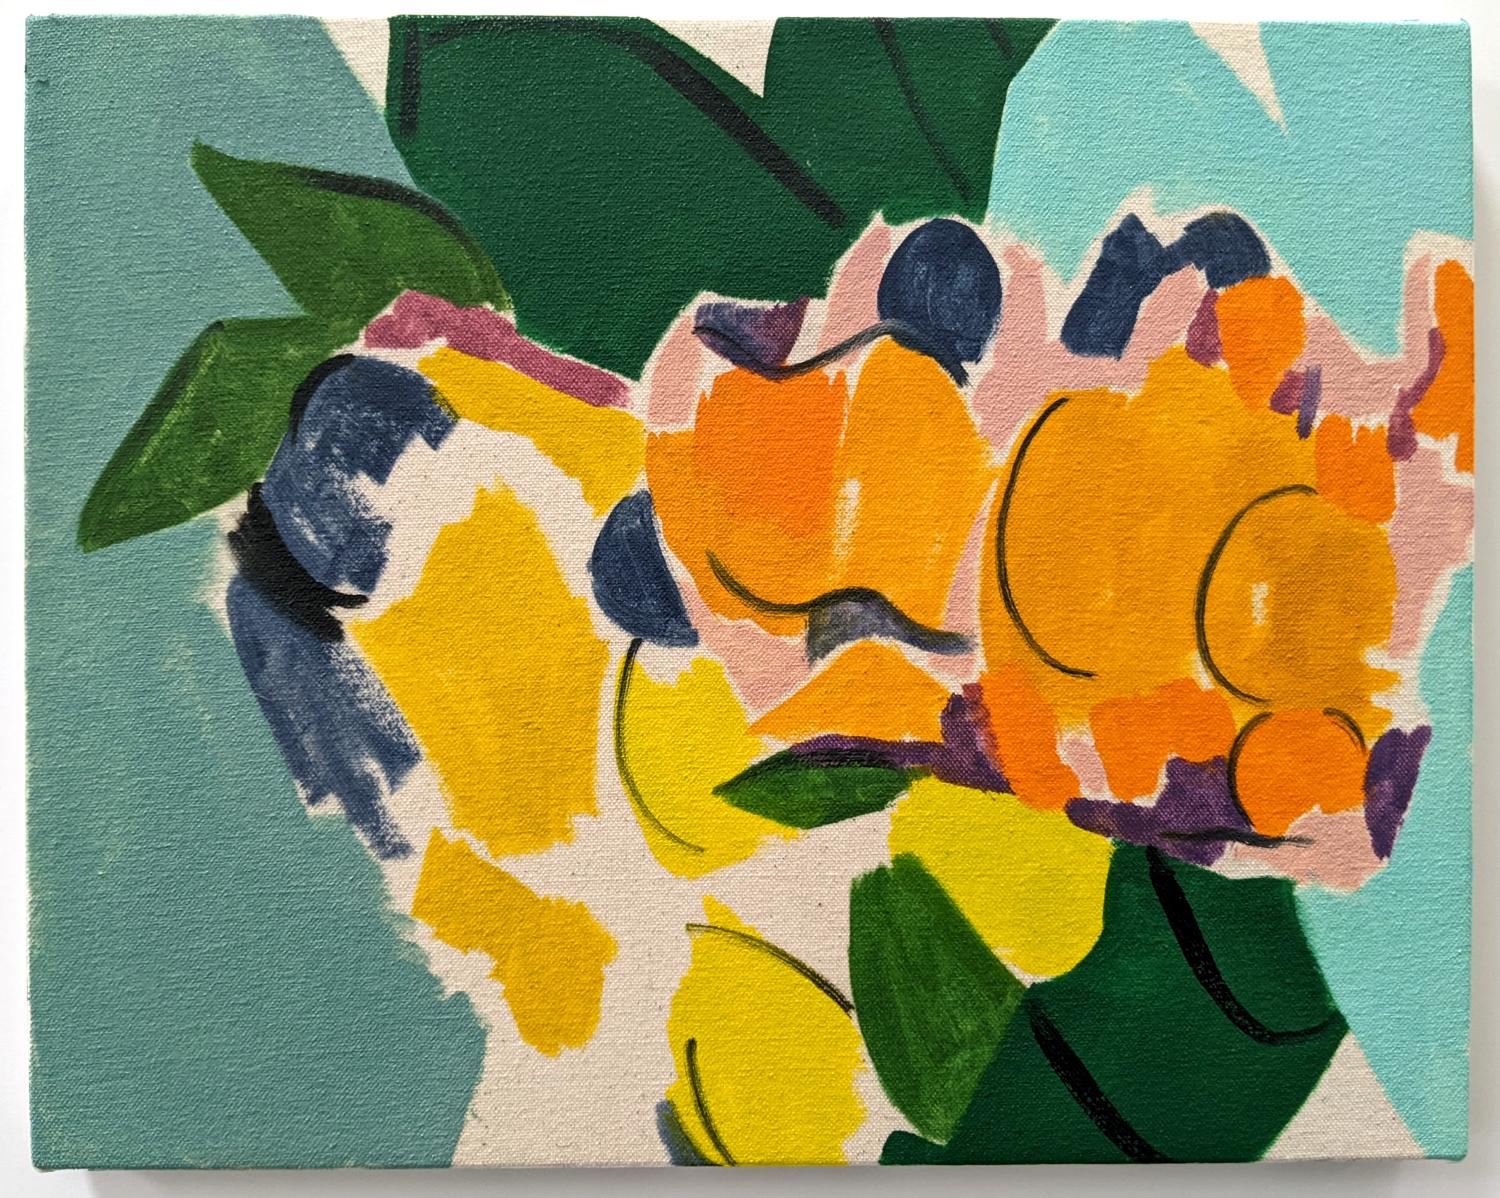 Citrus With Drapery - nature morte colorée et abstraite, huile sur toile sur panneau - Painting de Mel Davis